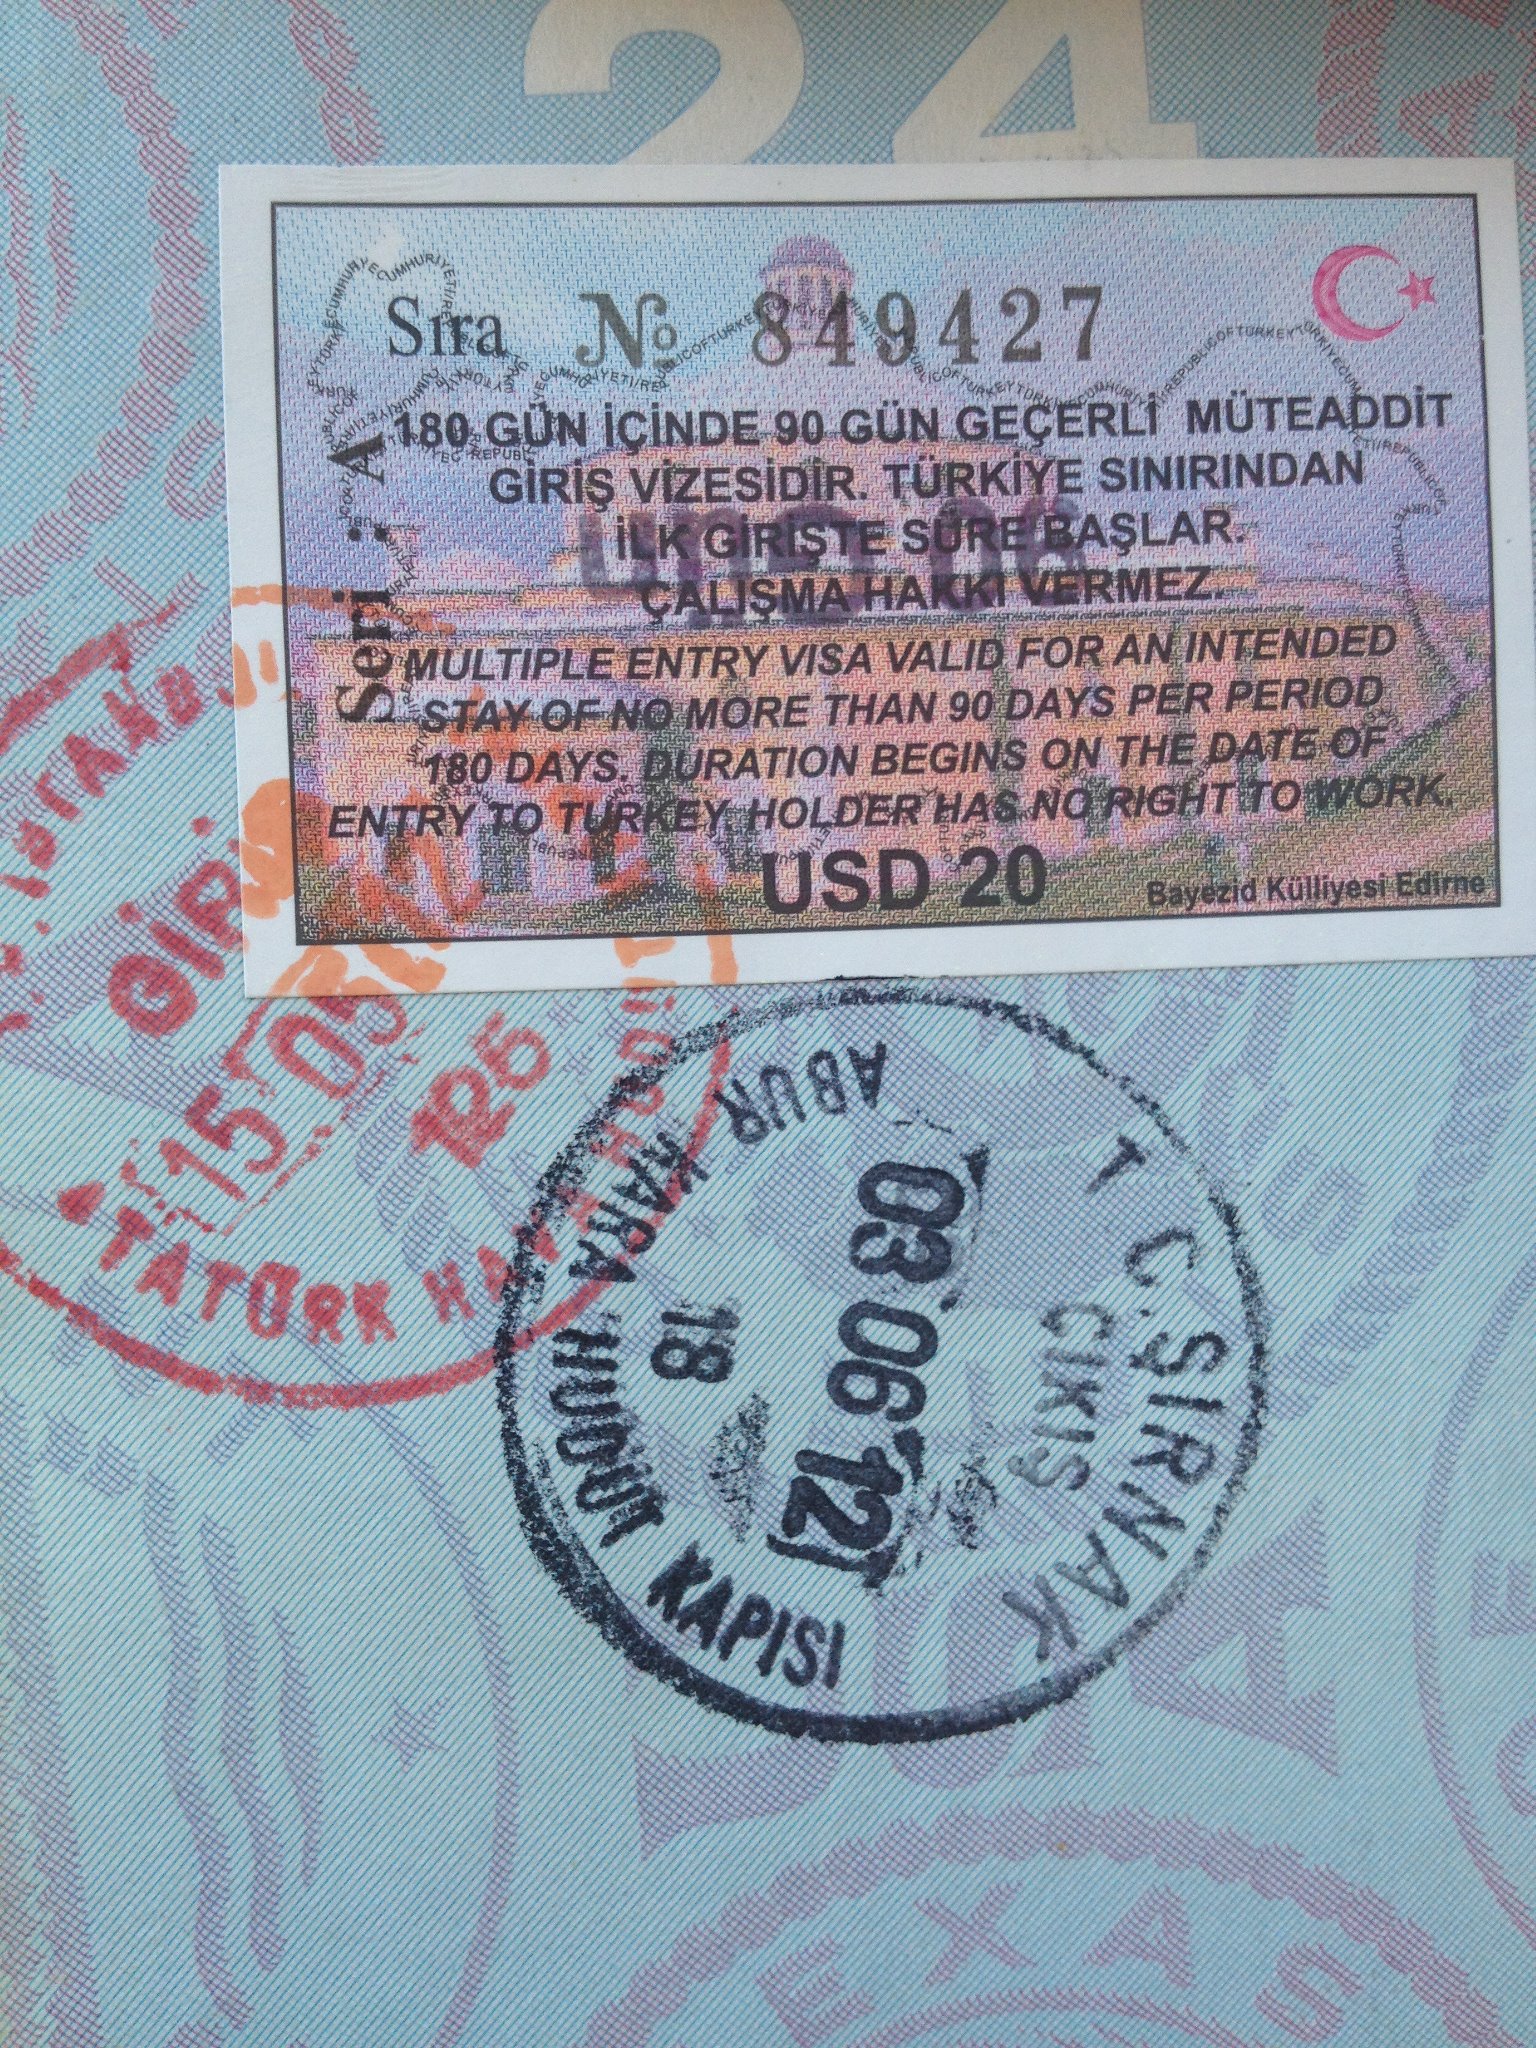 turkey visa for us tourist visa holders